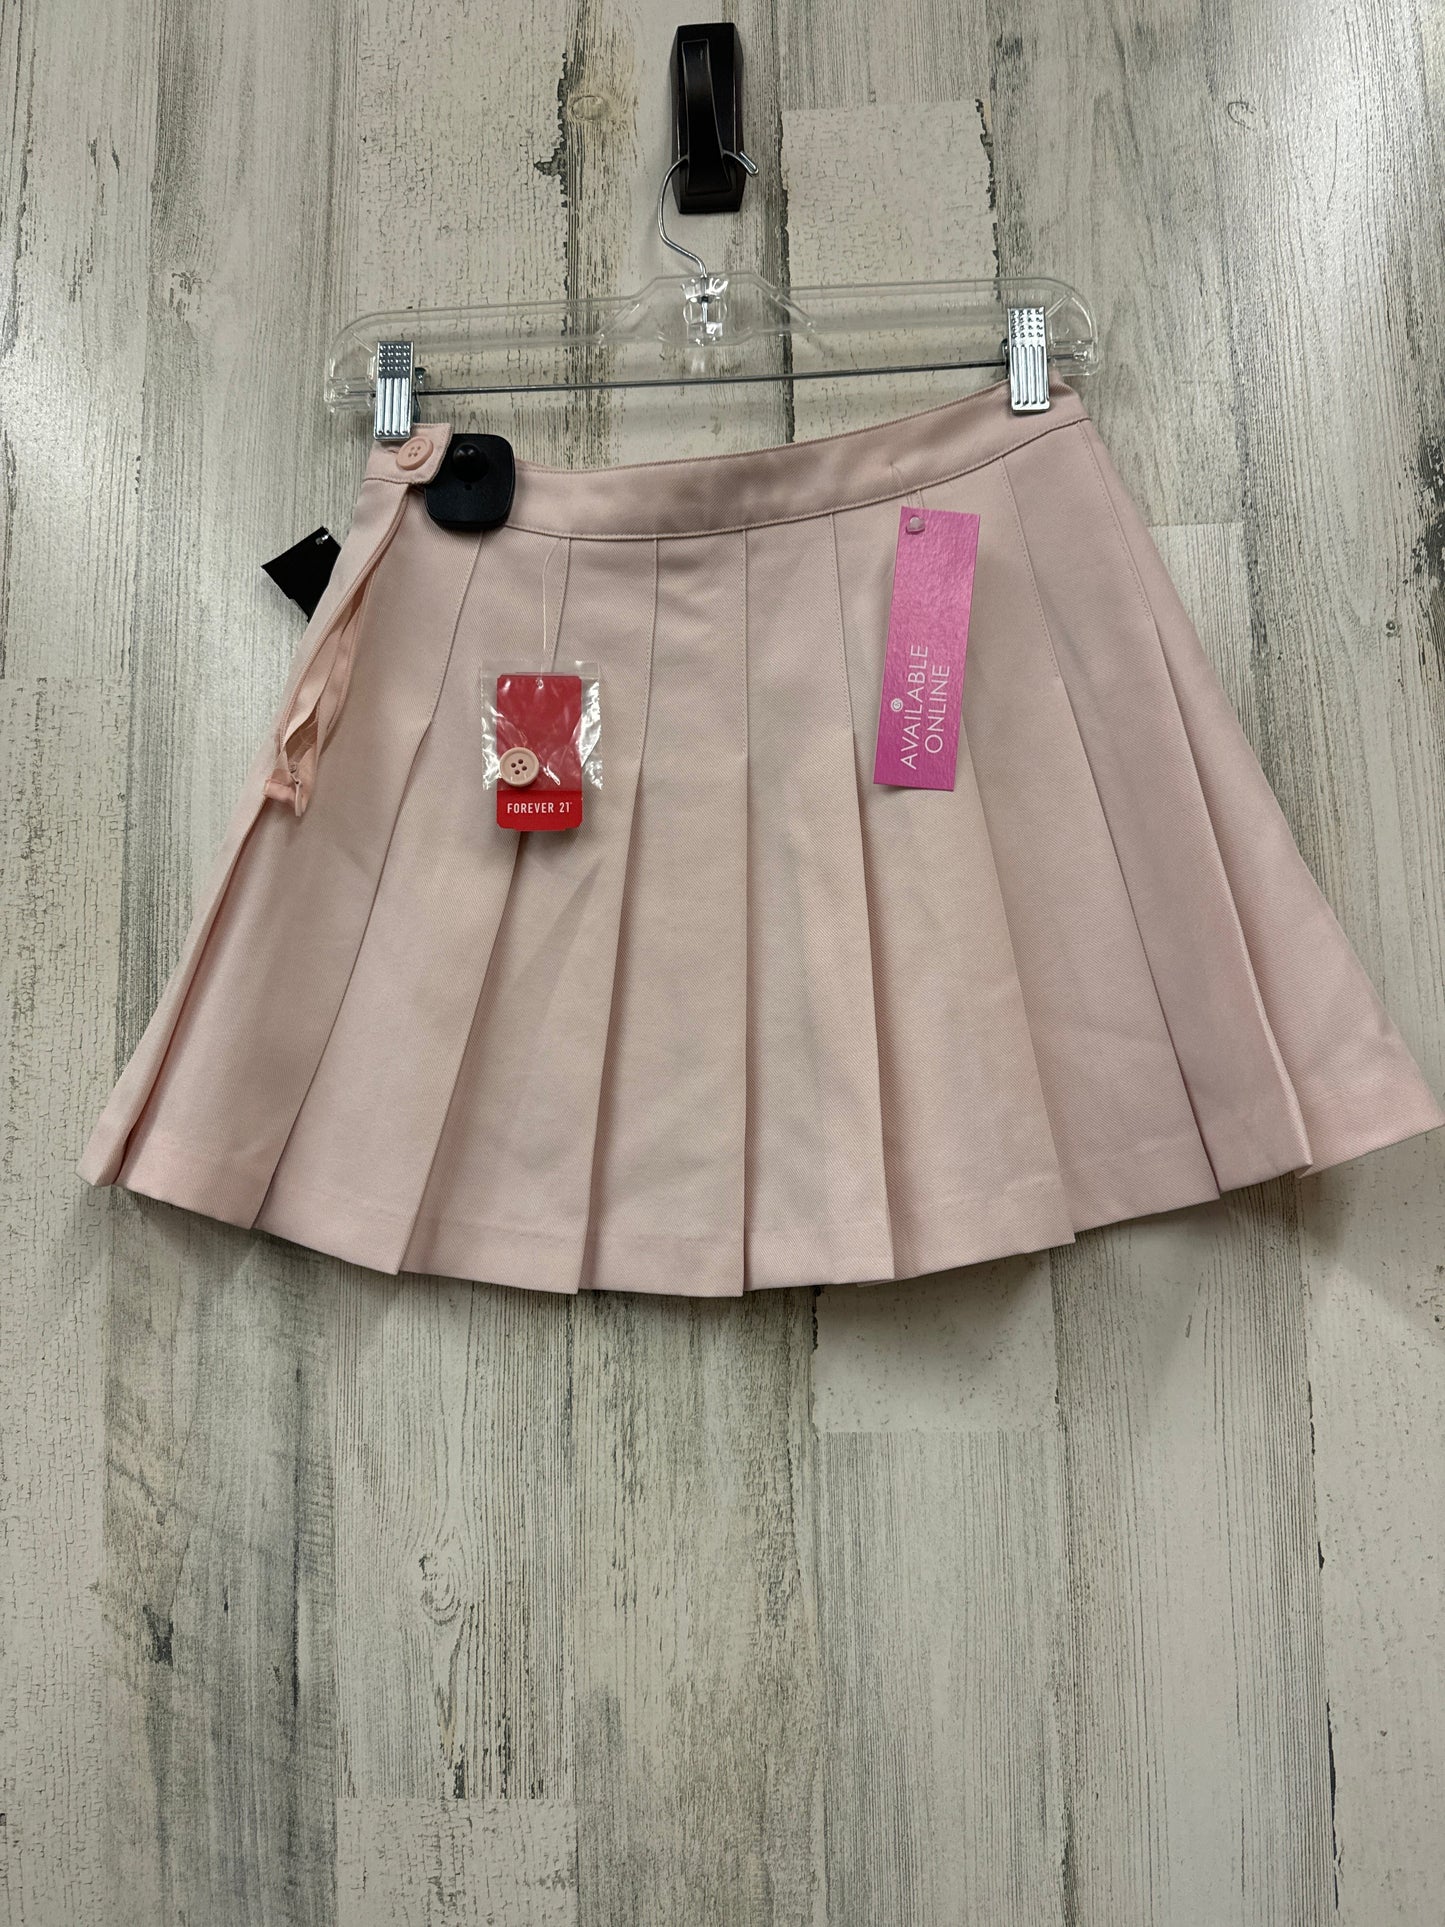 Pink Skirt Mini & Short Forever 21, Size S